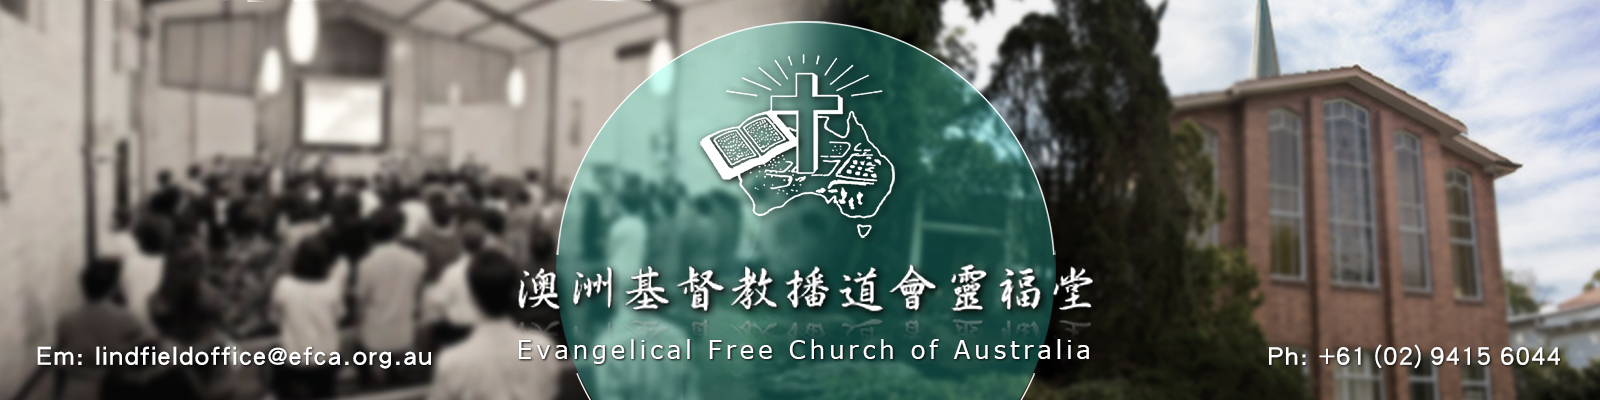 澳洲基督教播道會靈福堂 EFCA